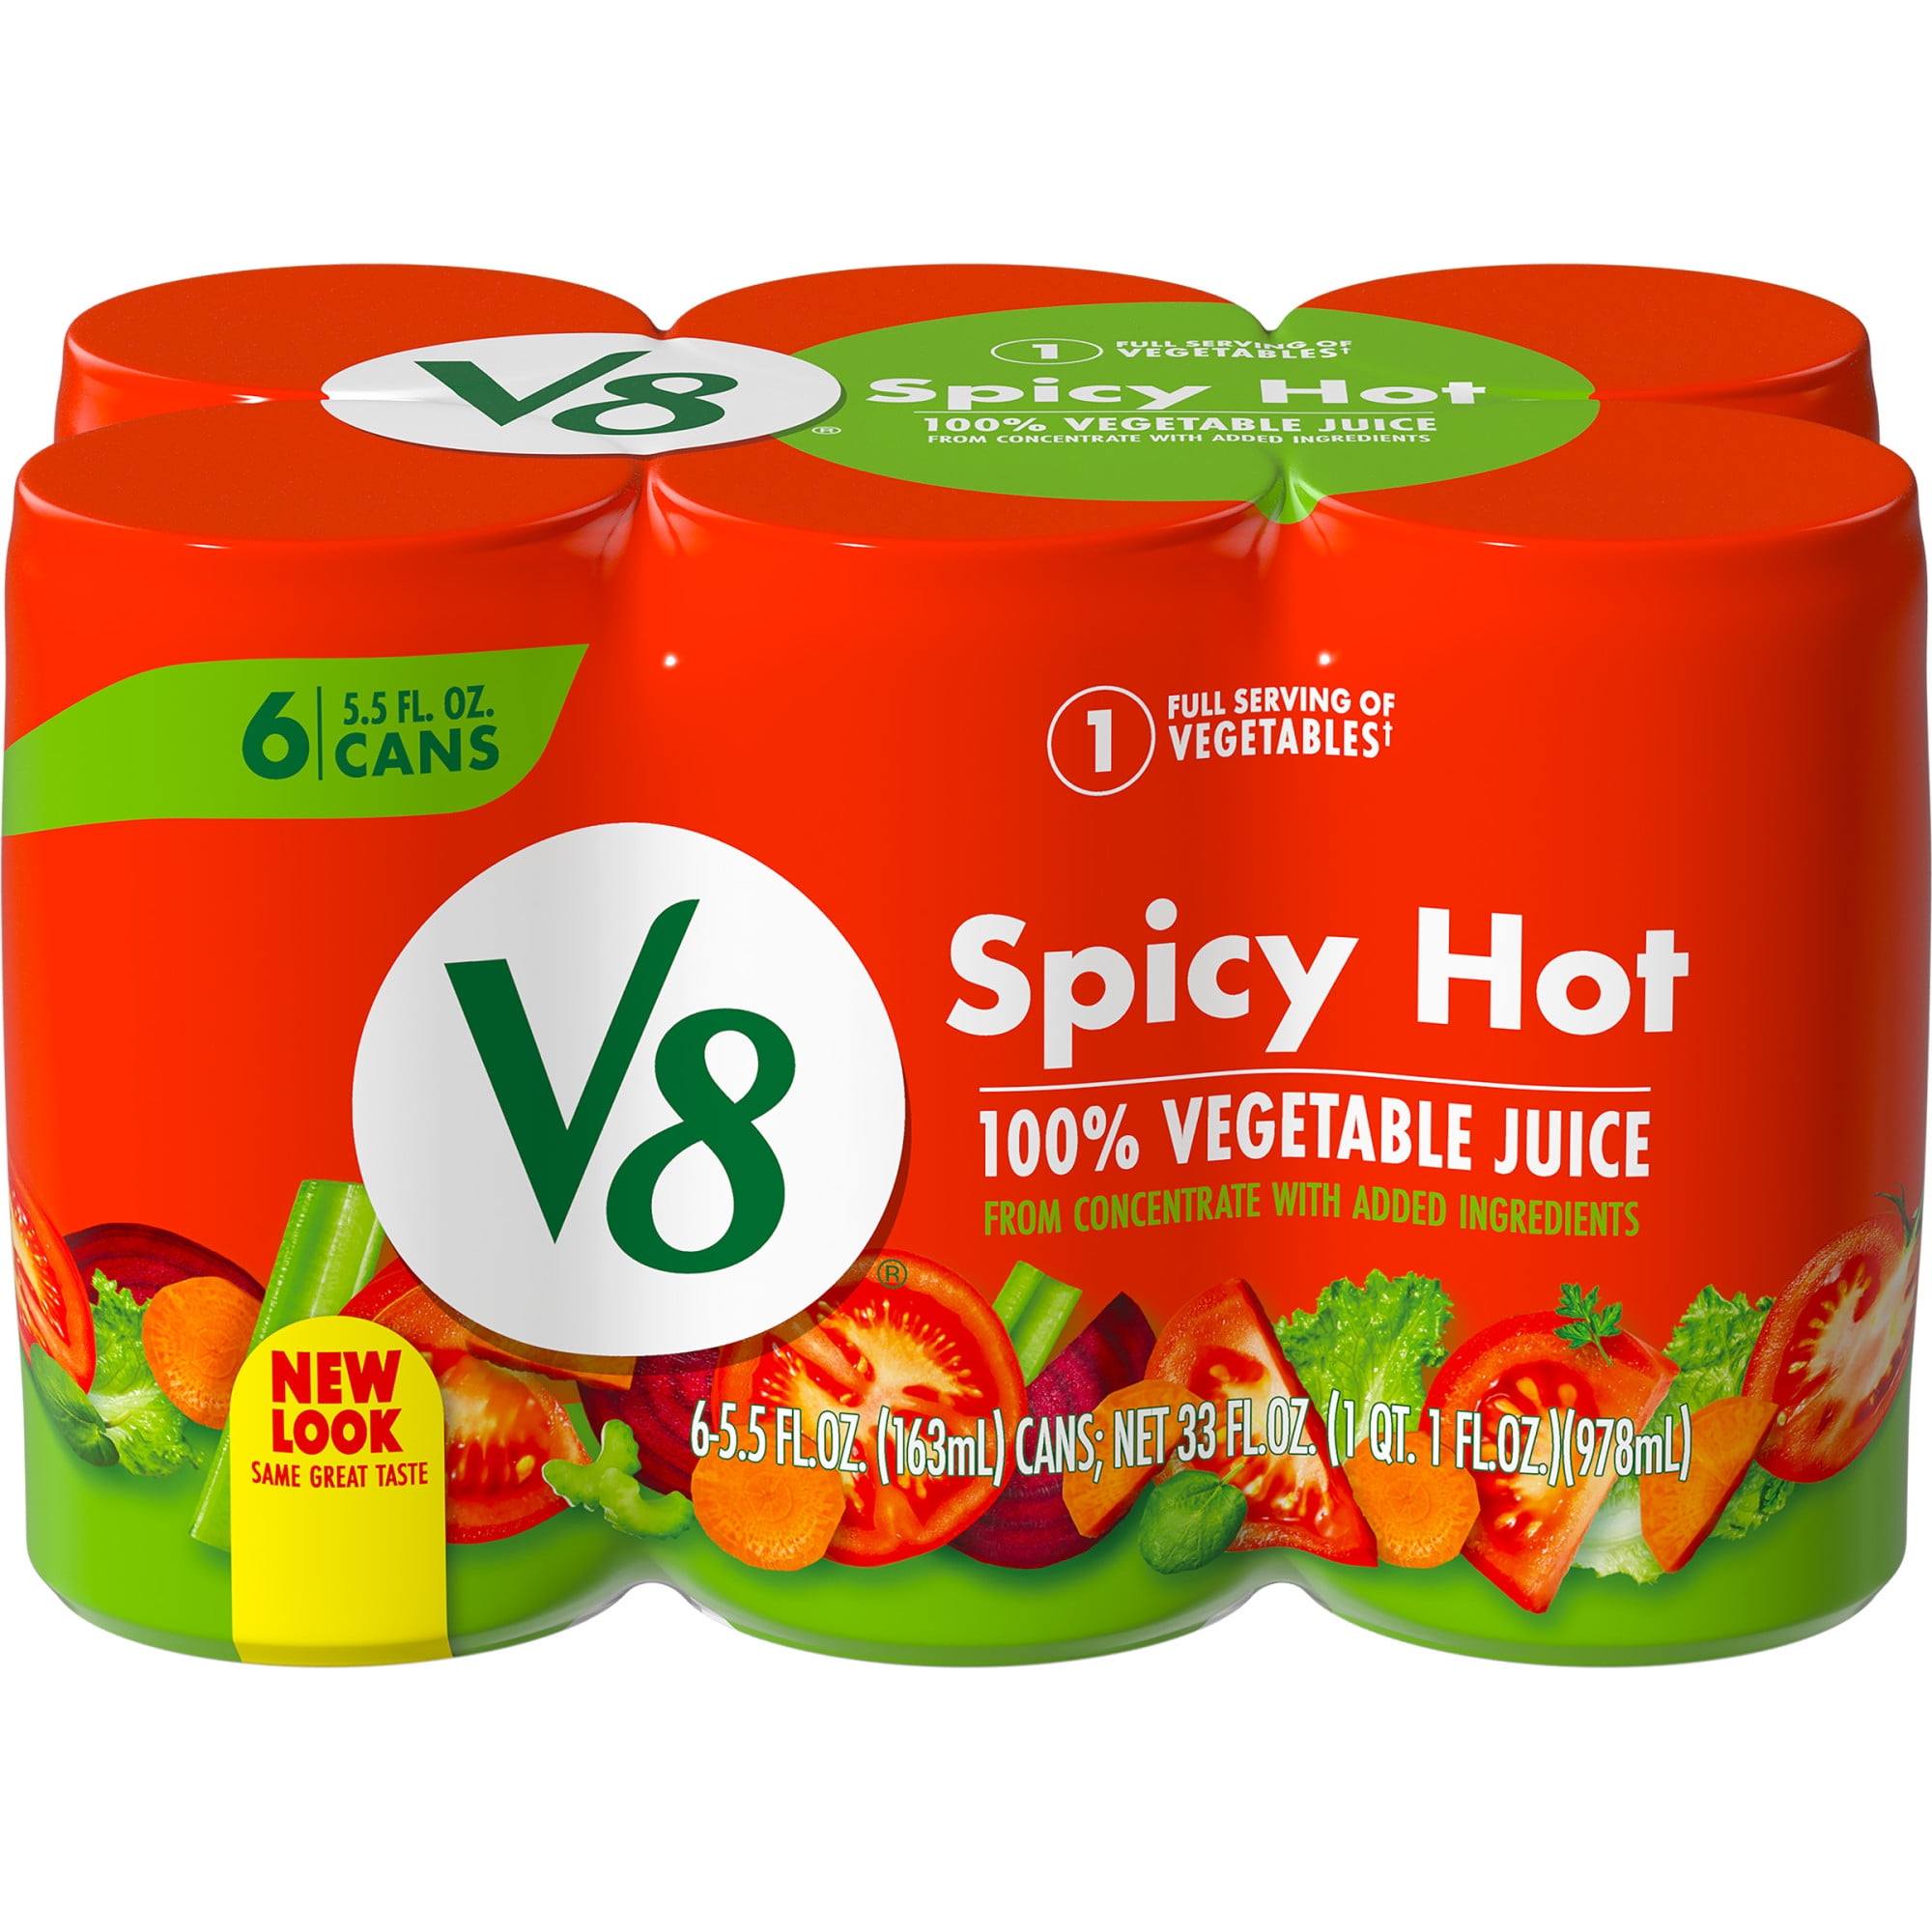 V8 Spicy Hot 100% Vegetable Juice, 5.5 FL OZ Can (Pack of 6) - Walmart.com